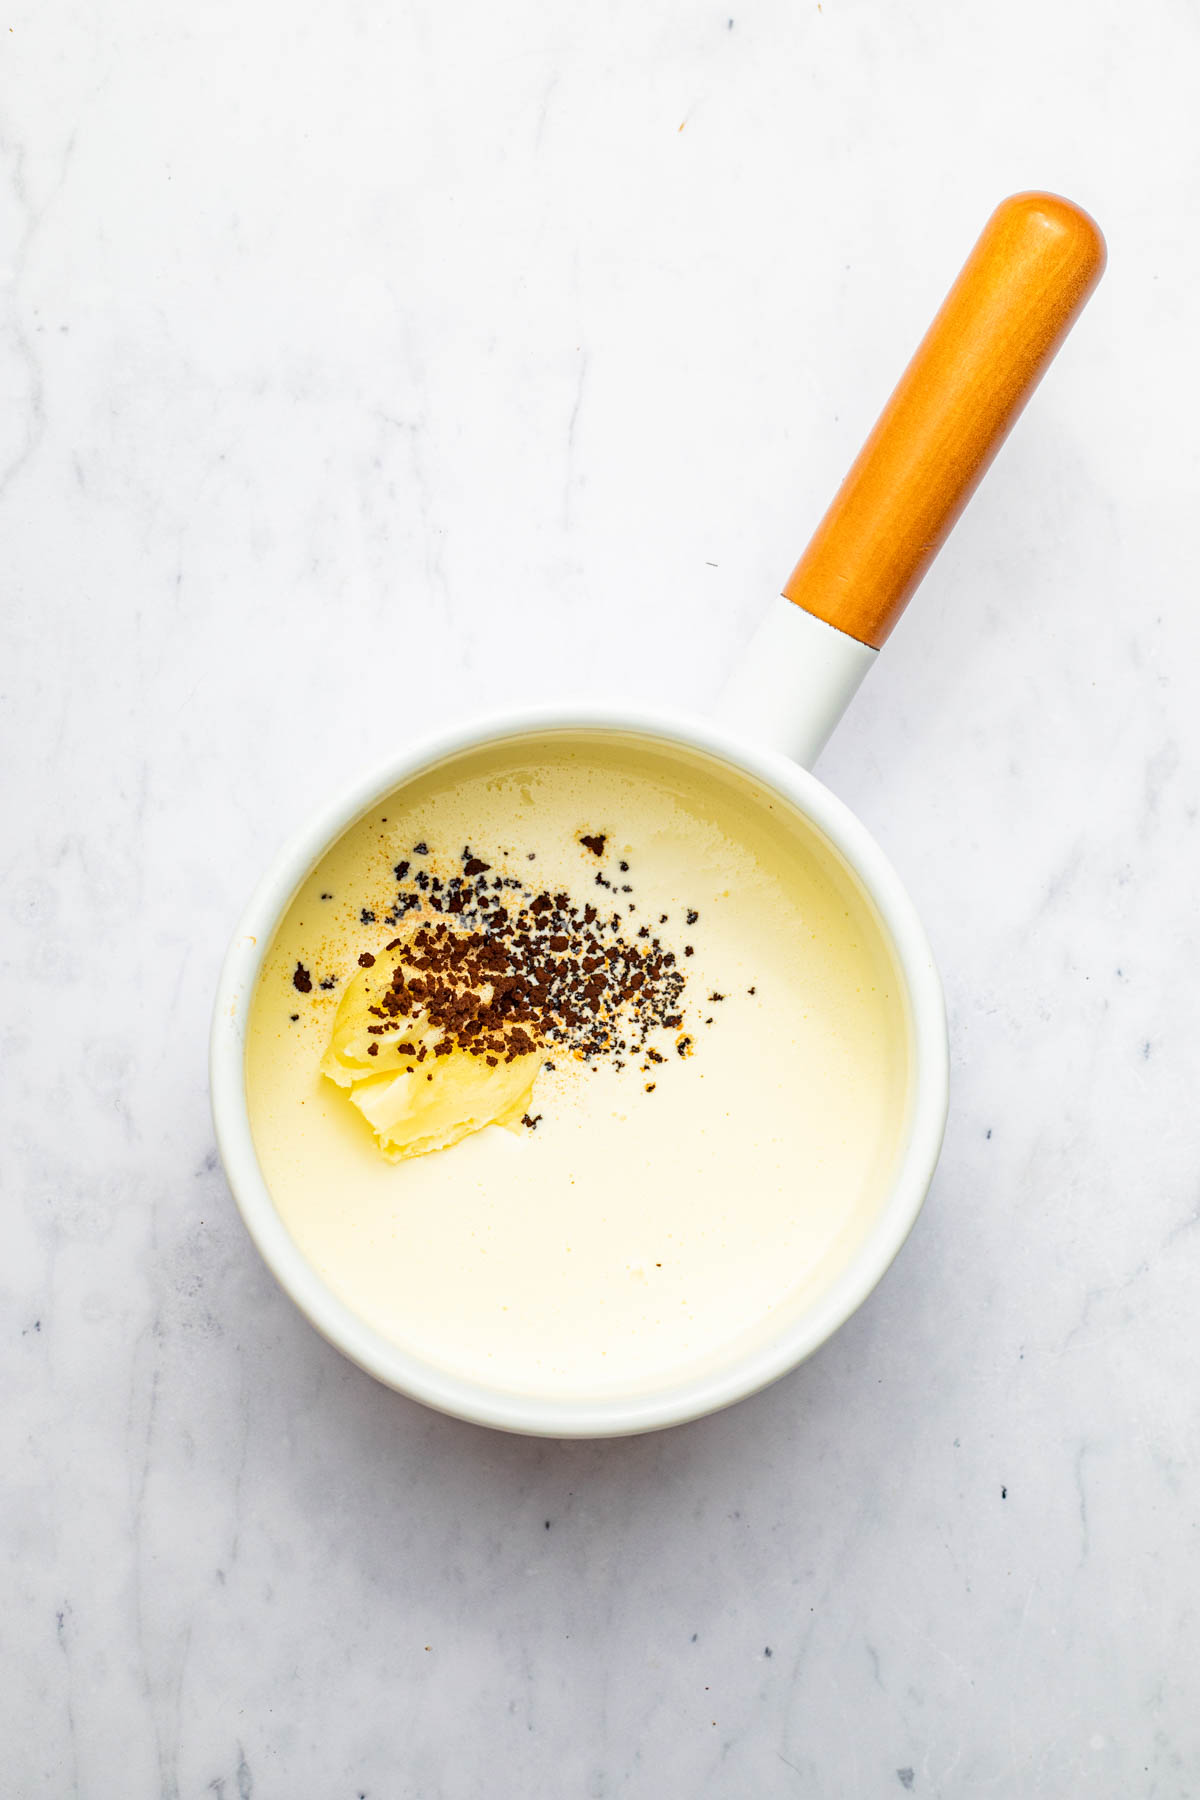 Cream, butter, and espresso powder in a small white pot.